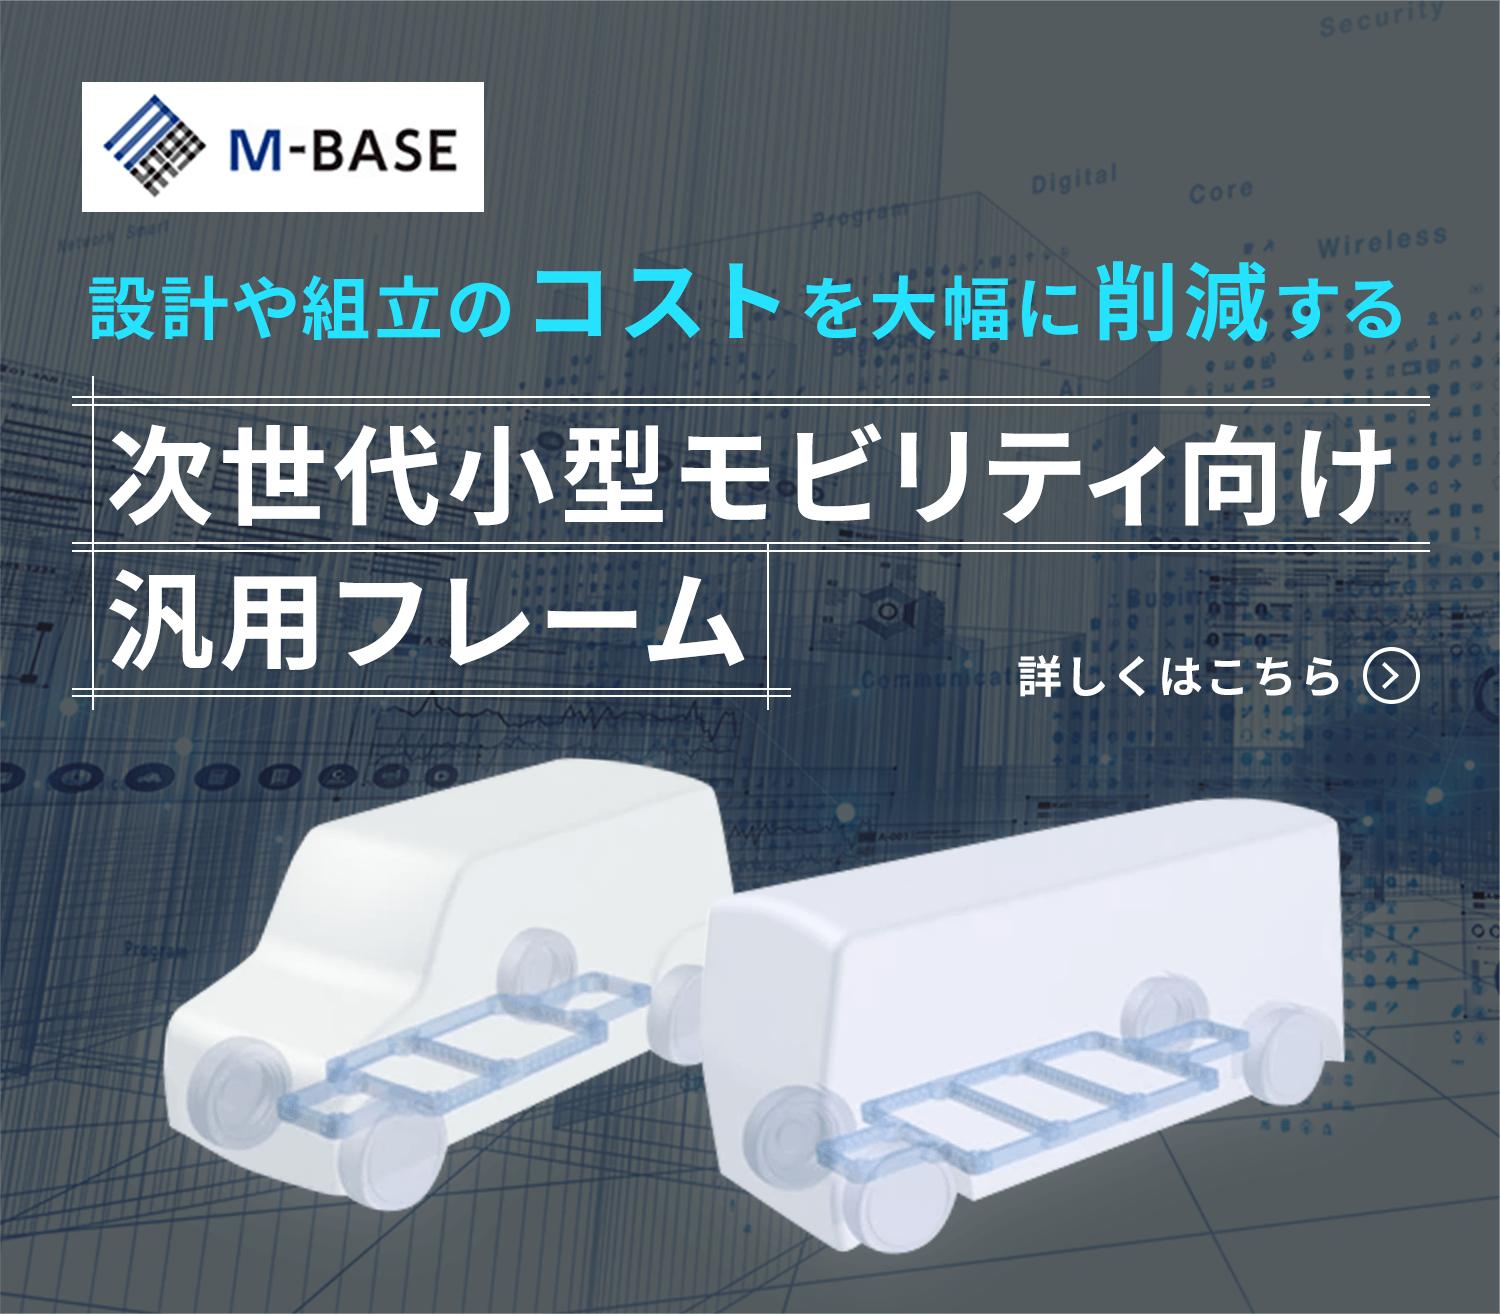 次世代小型モビリティ向け汎用フレーム『M-BASE』